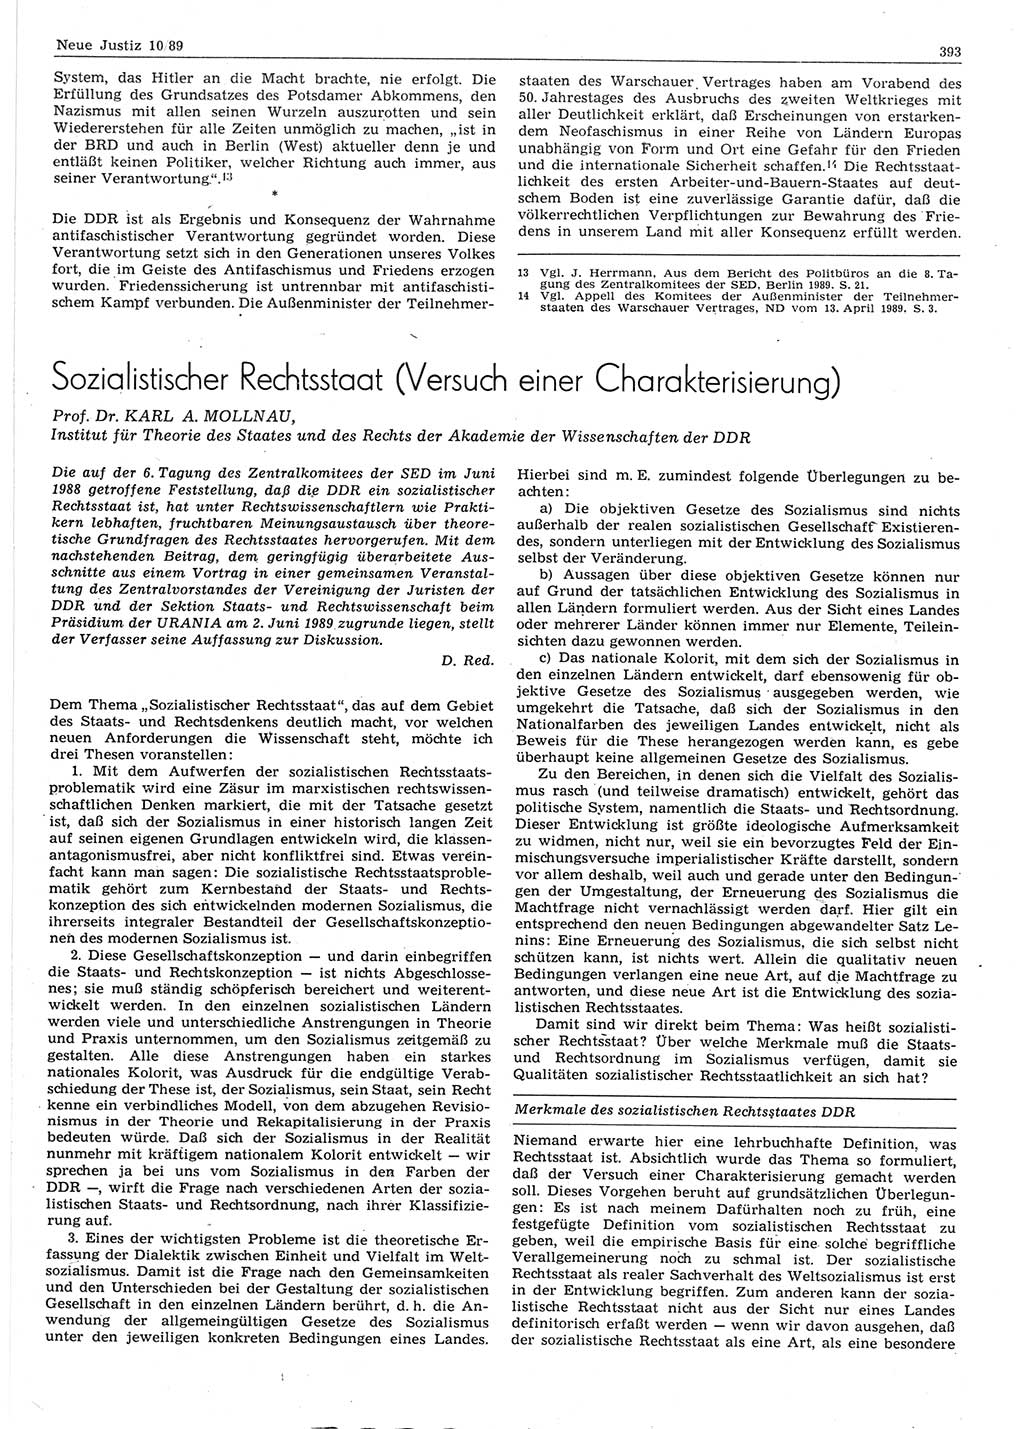 Neue Justiz (NJ), Zeitschrift für sozialistisches Recht und Gesetzlichkeit [Deutsche Demokratische Republik (DDR)], 43. Jahrgang 1989, Seite 393 (NJ DDR 1989, S. 393)